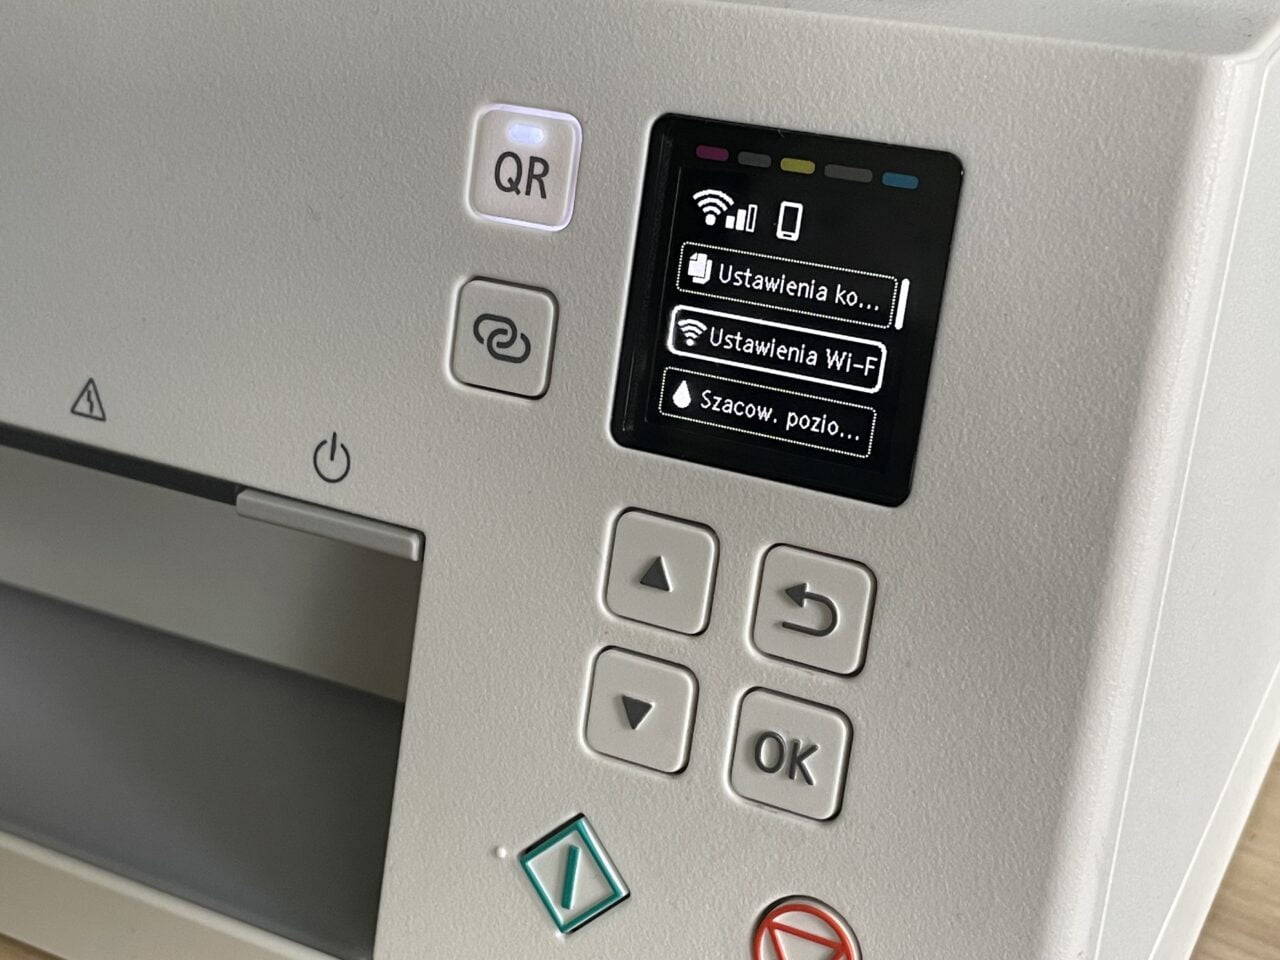 Panel sterowania urządzenia z kolorowym ekranem LCD wyświetlającym opcje menu w języku polskim, przyciski nawigacyjne oraz symbol QR. Jak zainstalować drukarkę Canon na przykładzie modelu Canon PIXma TS6351